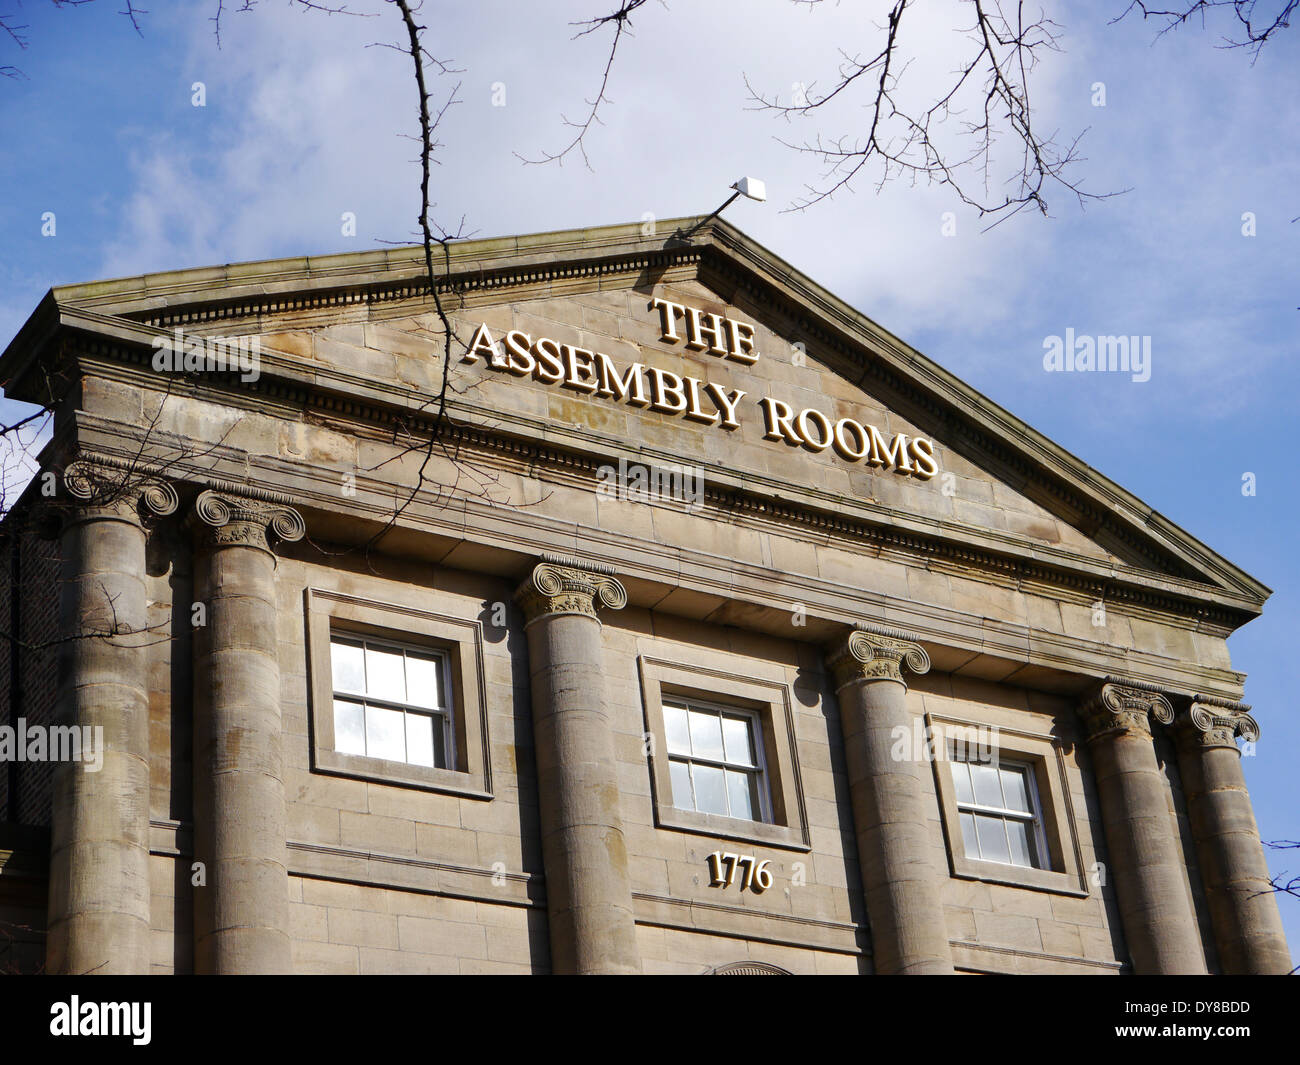 Le caratteristiche architettoniche del vecchio gruppo Camere: un neo-classico edificio in pietra, Grainger Town, Newcastle upon Tyne Foto Stock